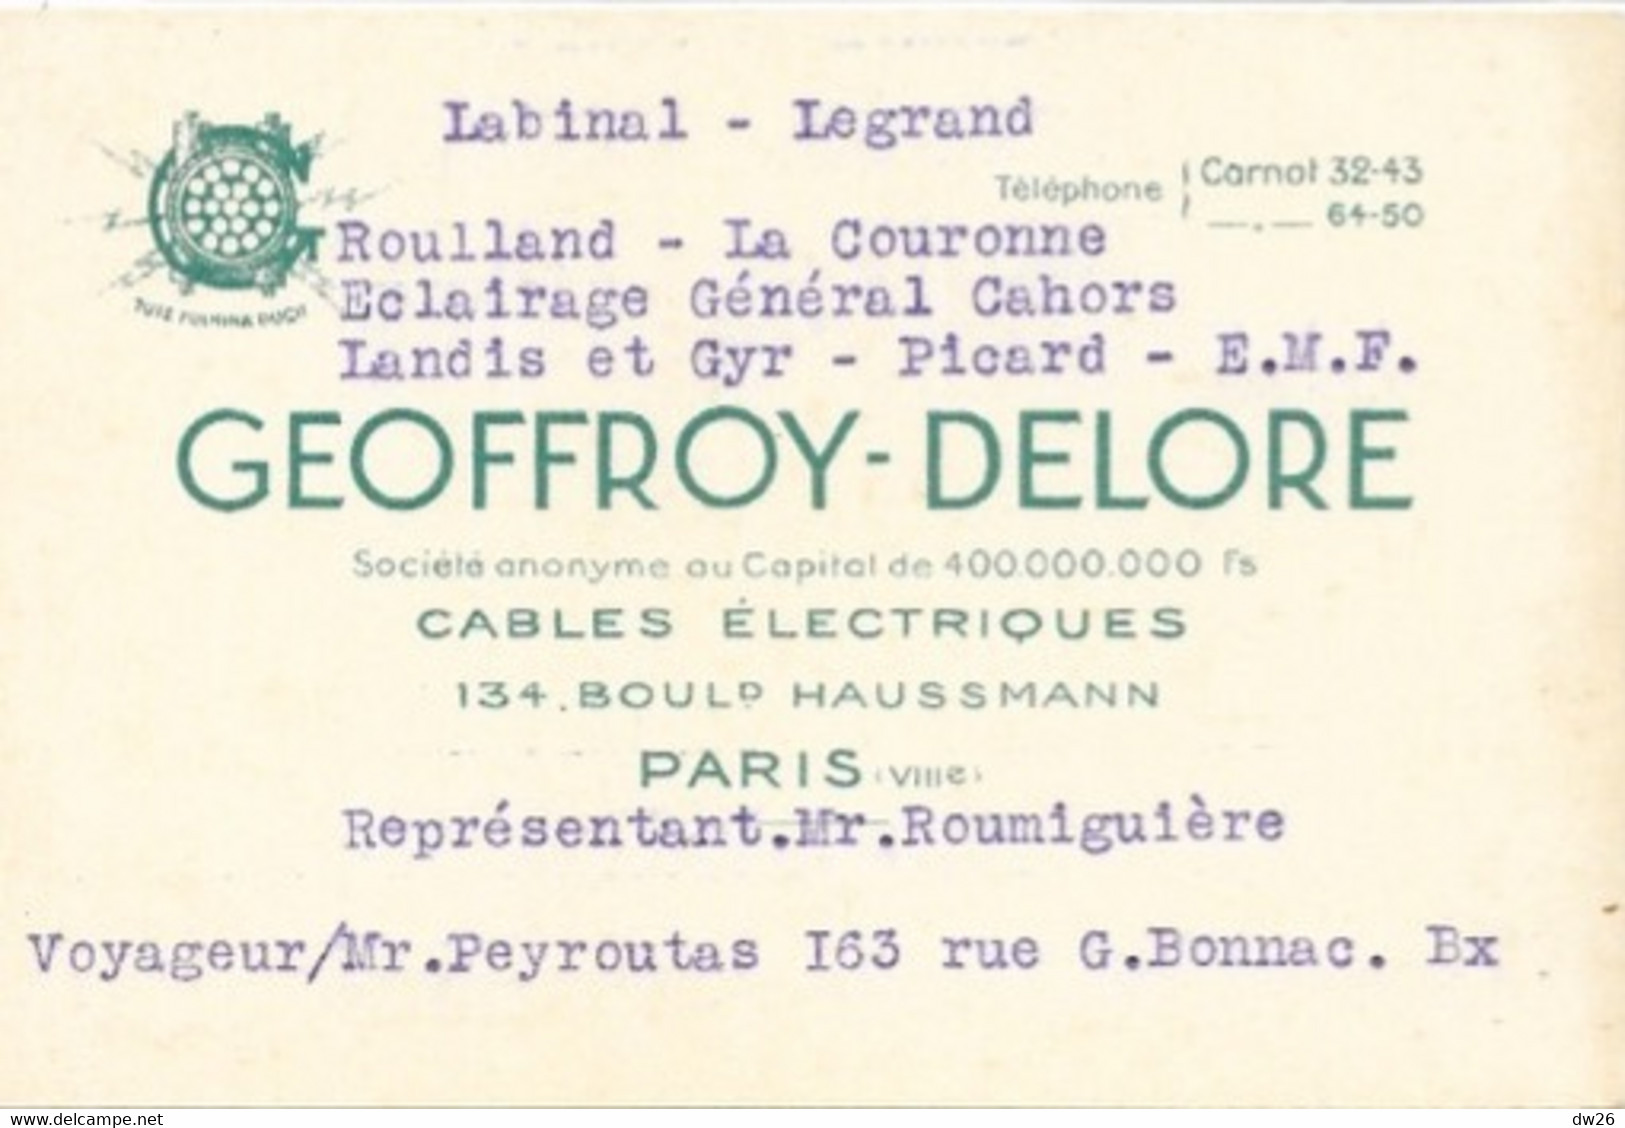 Carte De Représentant (M. Roumiguière) Cables Electriques Geoffroy-Delore, Boulevard Haussmann, Paris - Visiting Cards